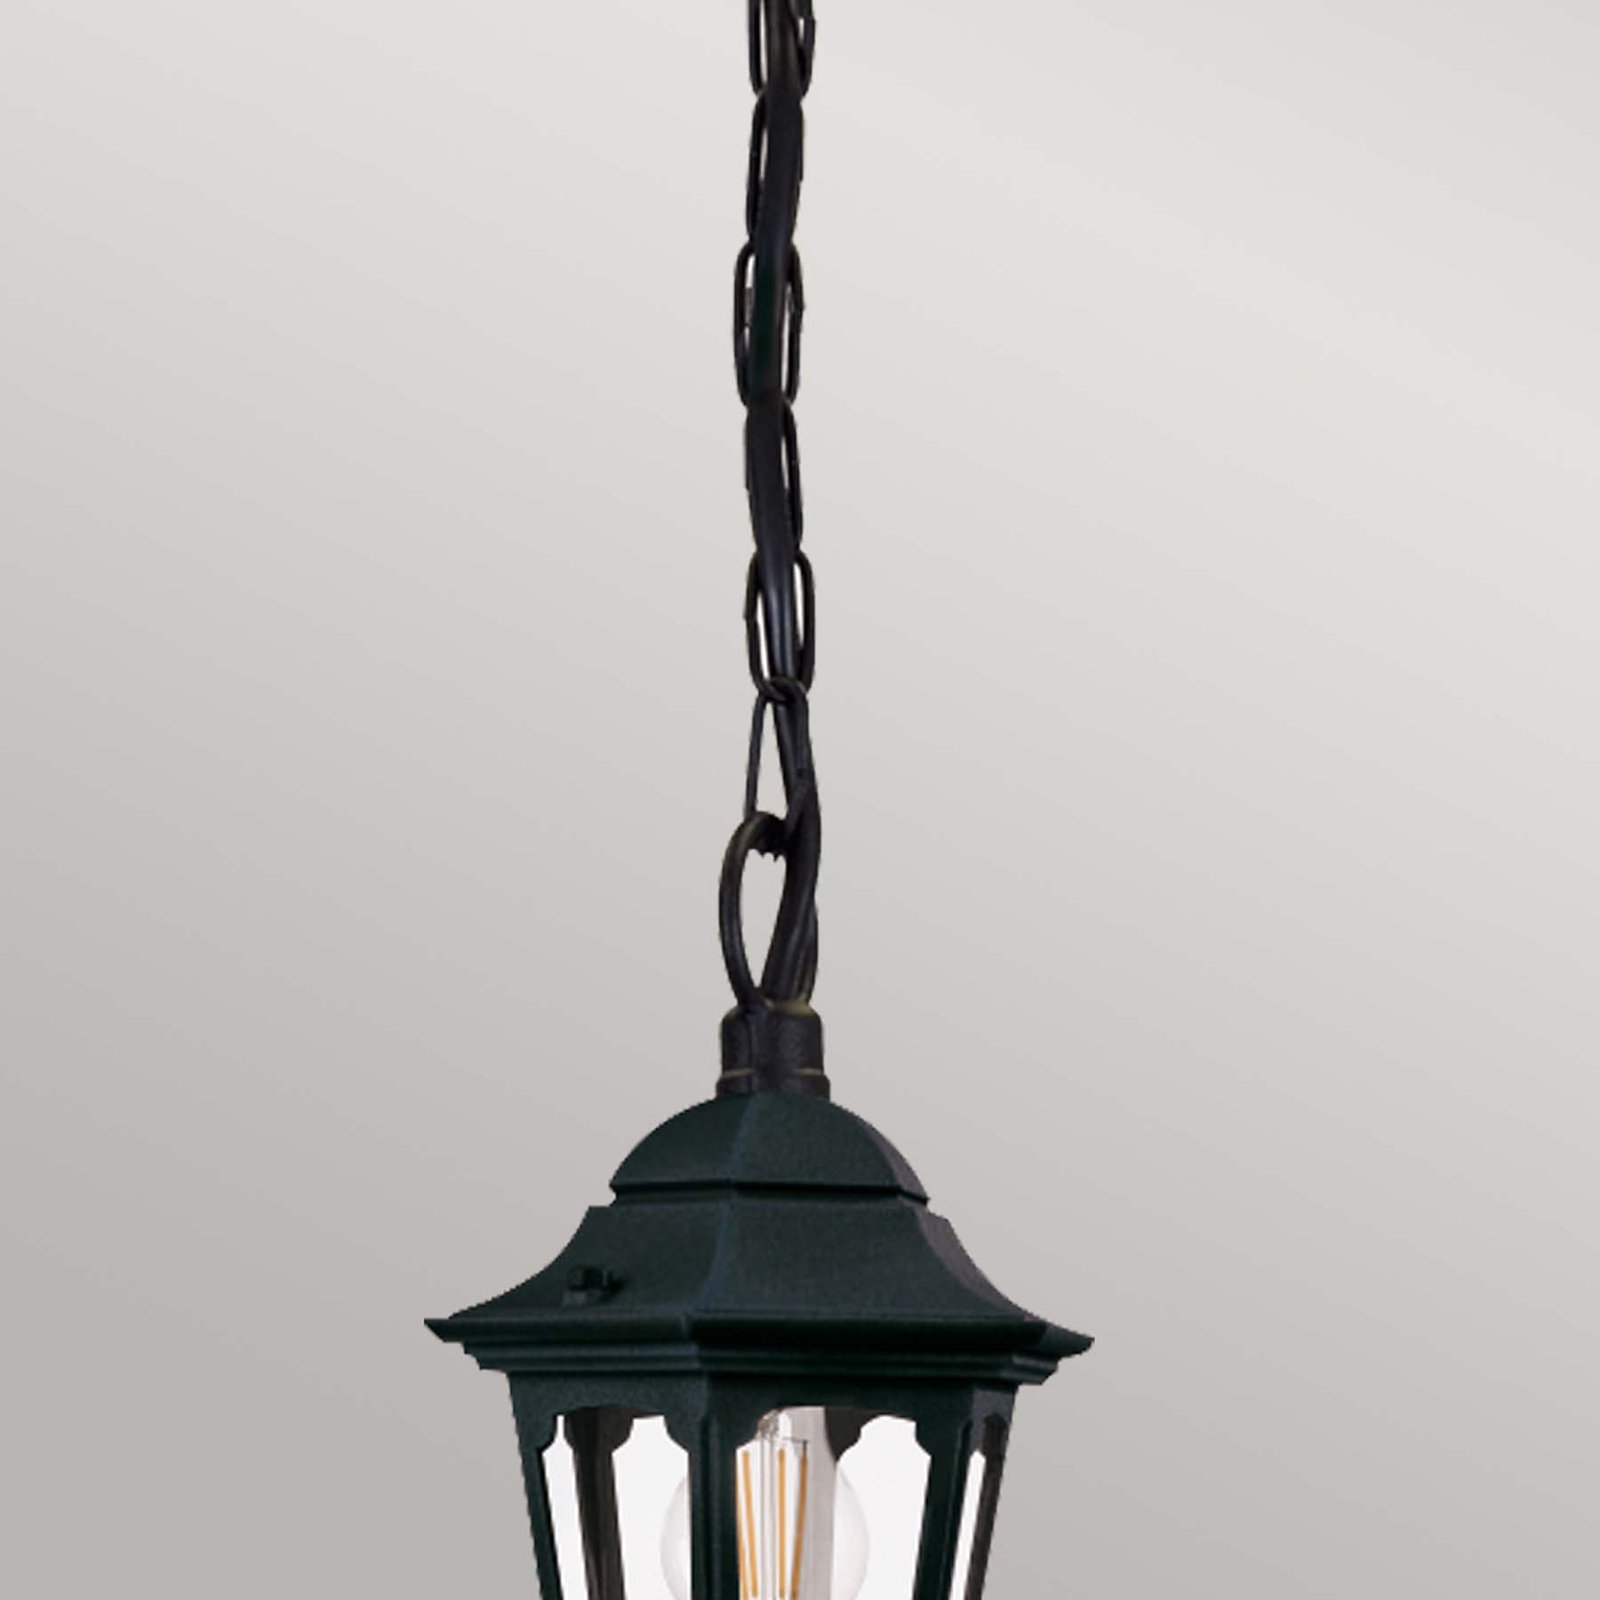 Lampa wisząca Parish z zawieszeniem łańcuchowym, wysokość 42 cm